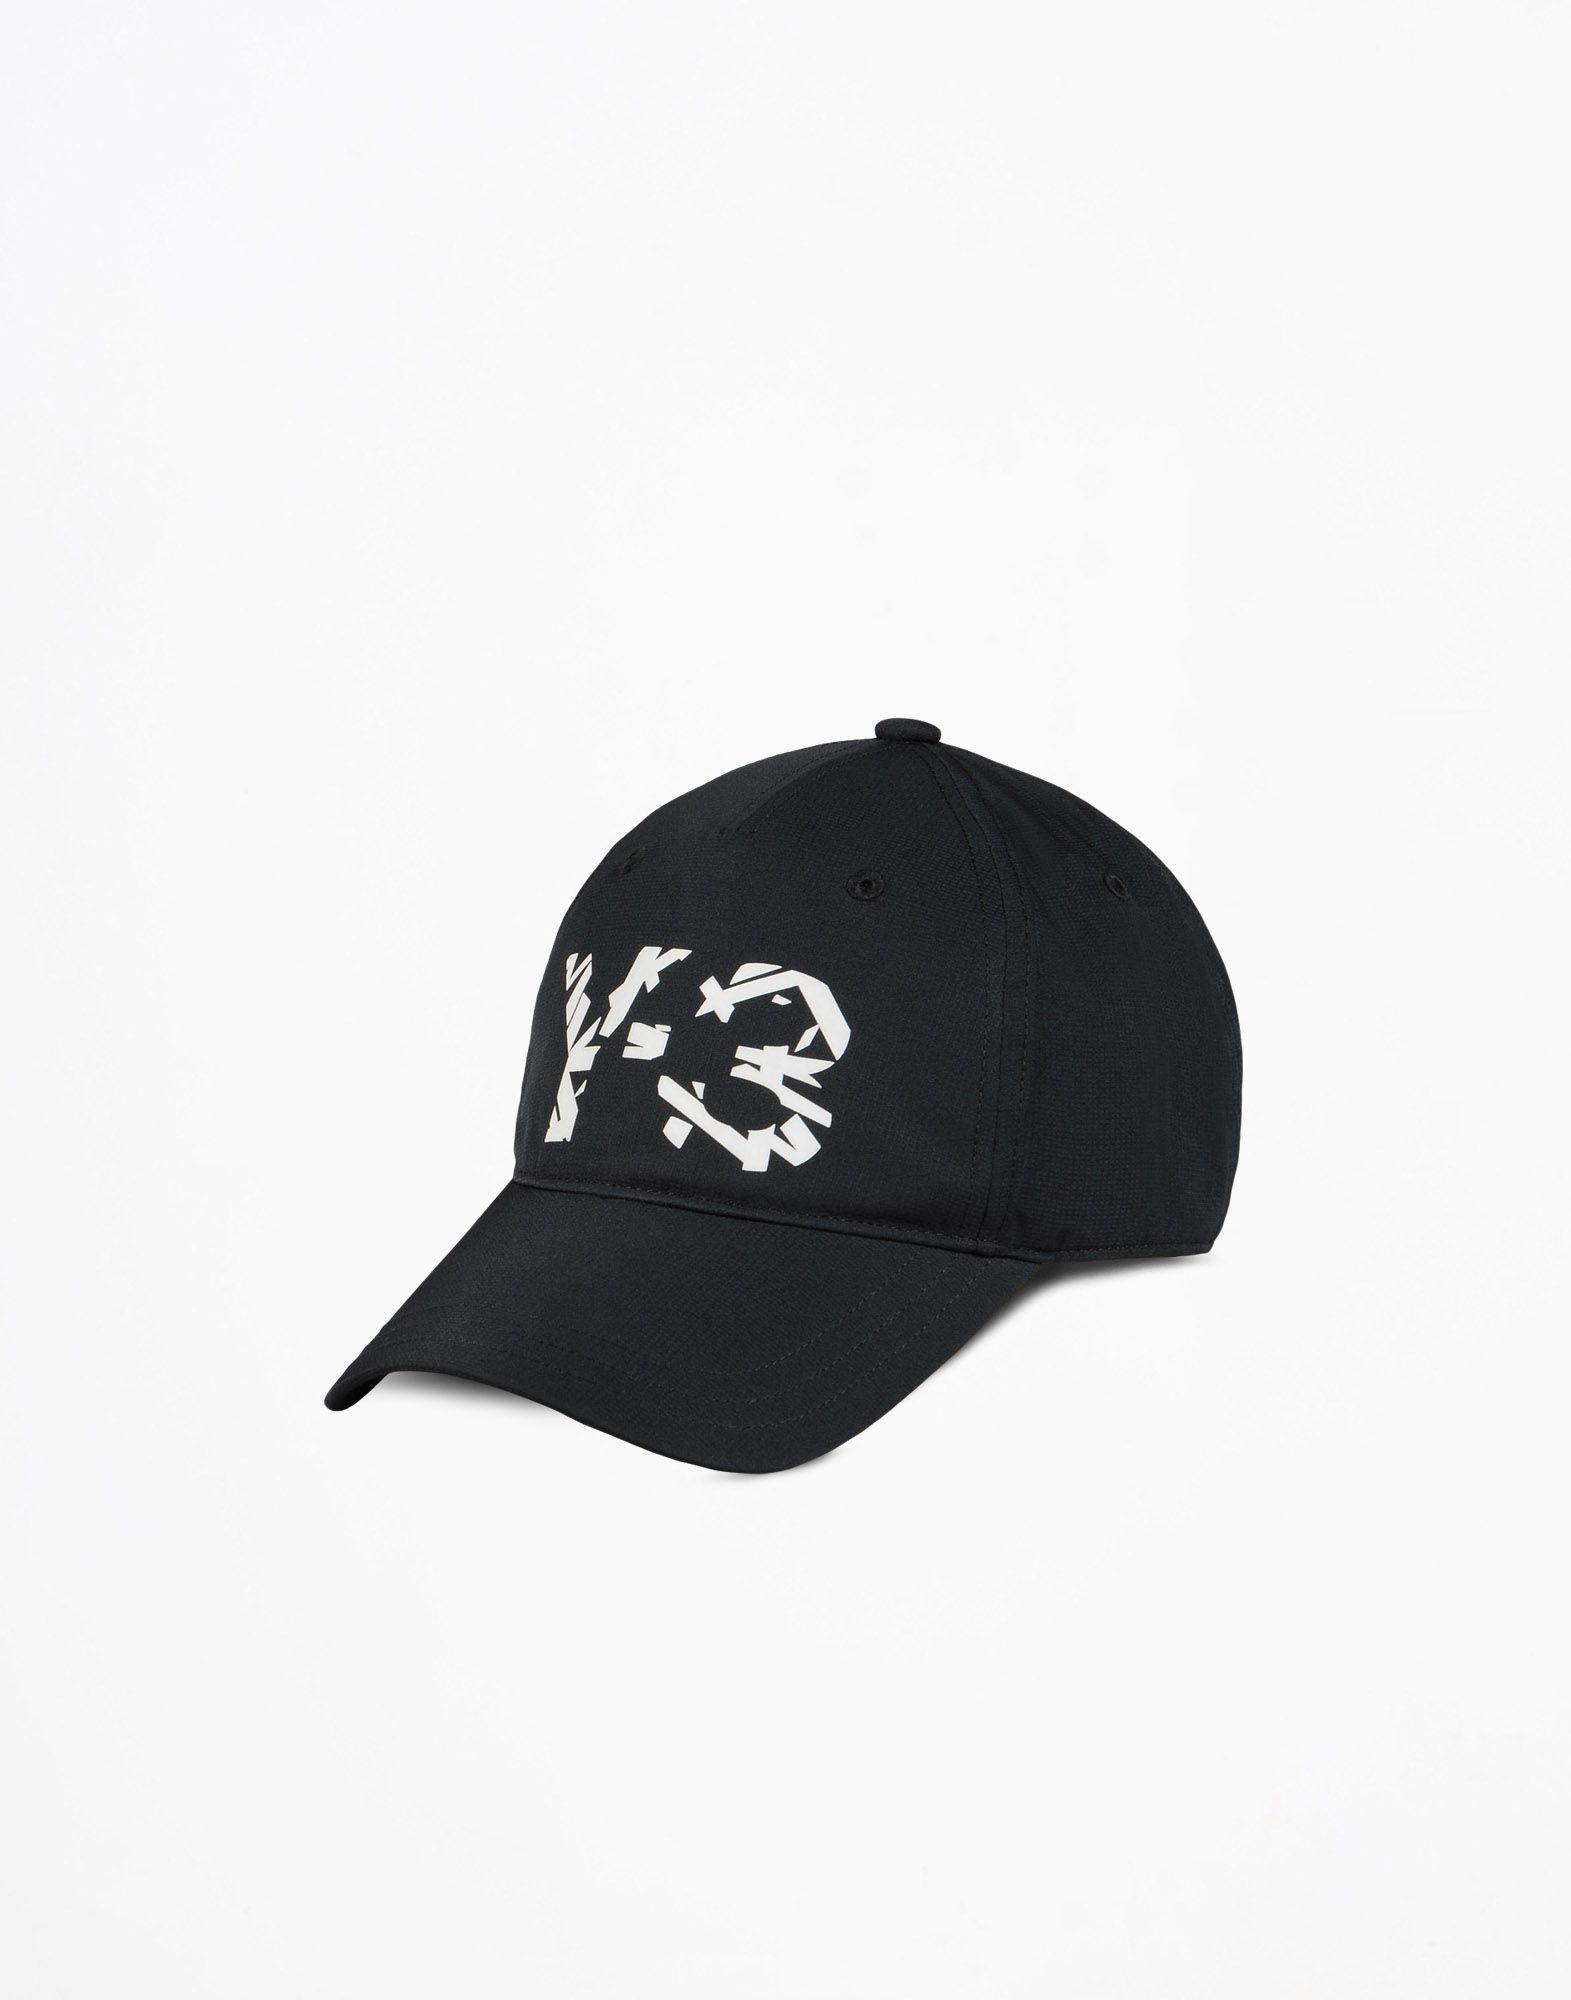 Y-3 Logo - Y 3 LOGO CAP Caps | Adidas Y-3 Official Site